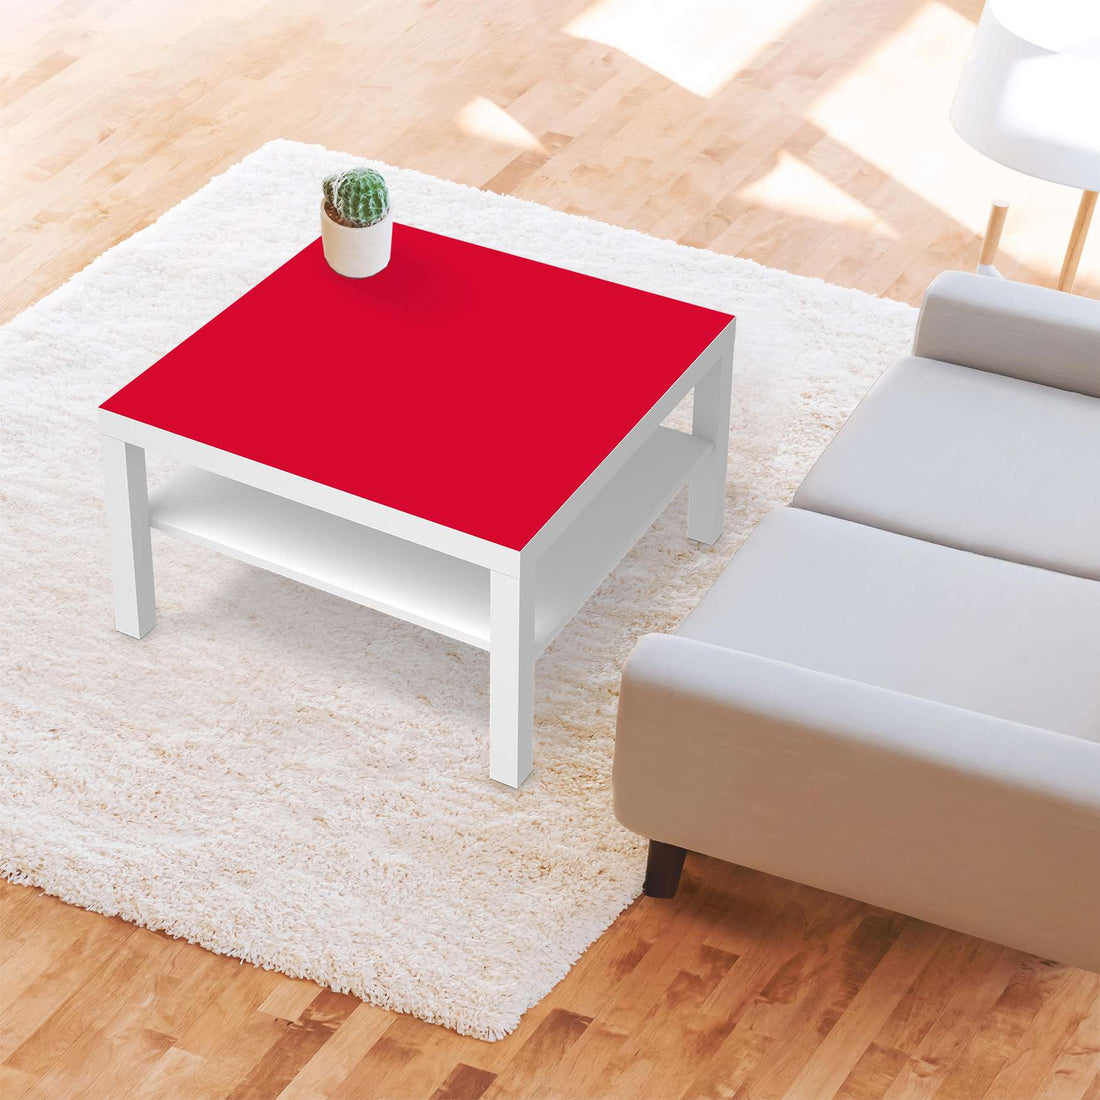 Selbstklebende Folie Rot Light - IKEA Lack Tisch 78x78 cm - Wohnzimmer